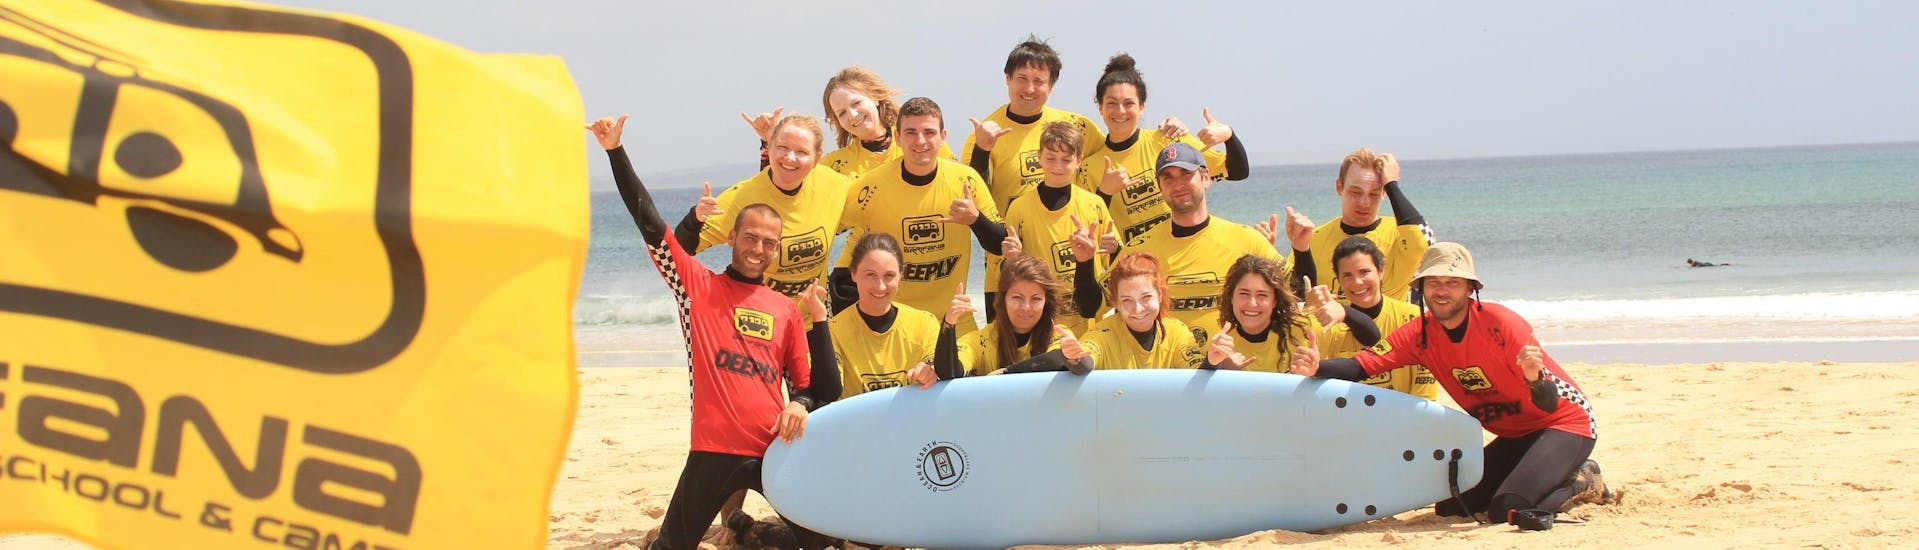 Entrenamiento de Surf Privado en Arrifana a partir de 15 años para surfistas avanzados.